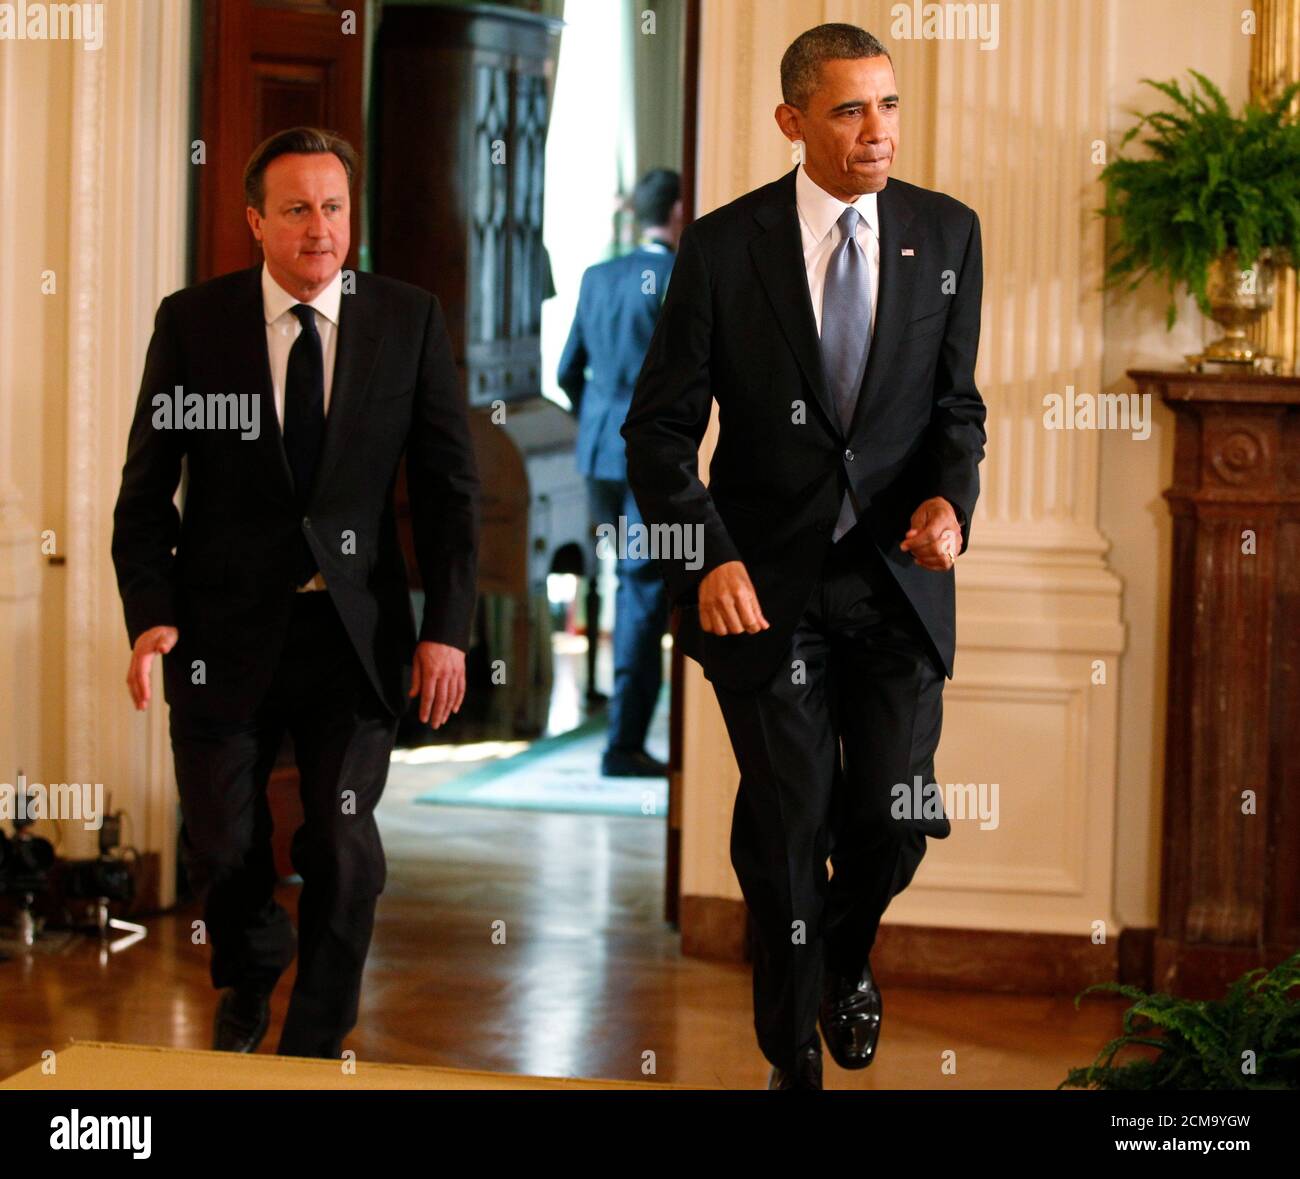 El primer ministro británico, David Cameron, y el presidente estadounidense, Barack Obama, llegan a una conferencia de prensa conjunta en la Sala este de la Casa Blanca, en Washington, el 13 de mayo de 2013. REUTERS/Jim Bourg (ESTADOS UNIDOS - Tags: POLÍTICA) Foto de stock